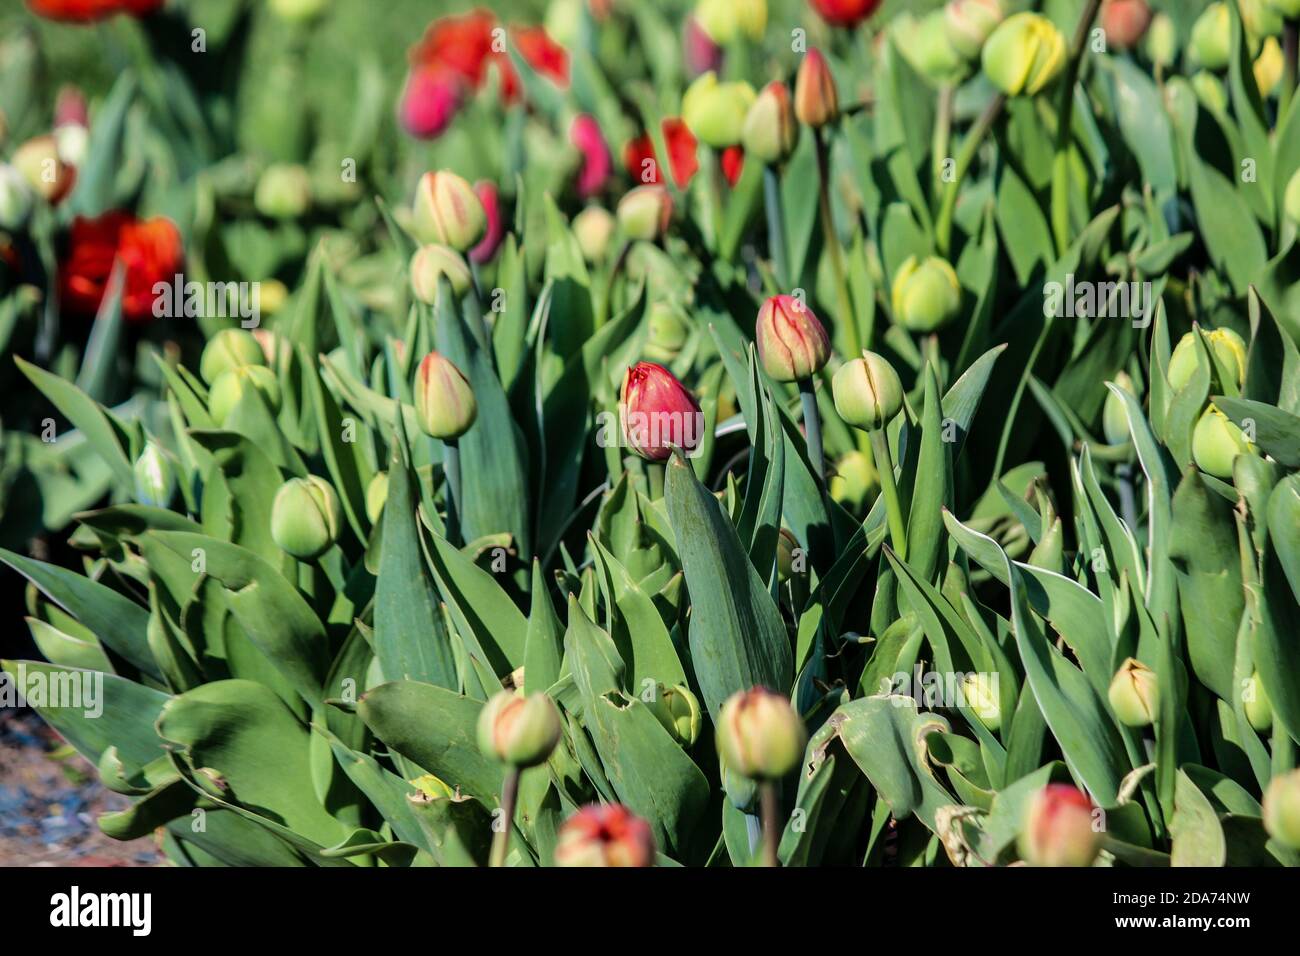 Les bourgeons de tulipe verts commencent à fleurir. Gros plan. Un bon fond pour un site sur les fleurs, la floriculture, l'art Banque D'Images